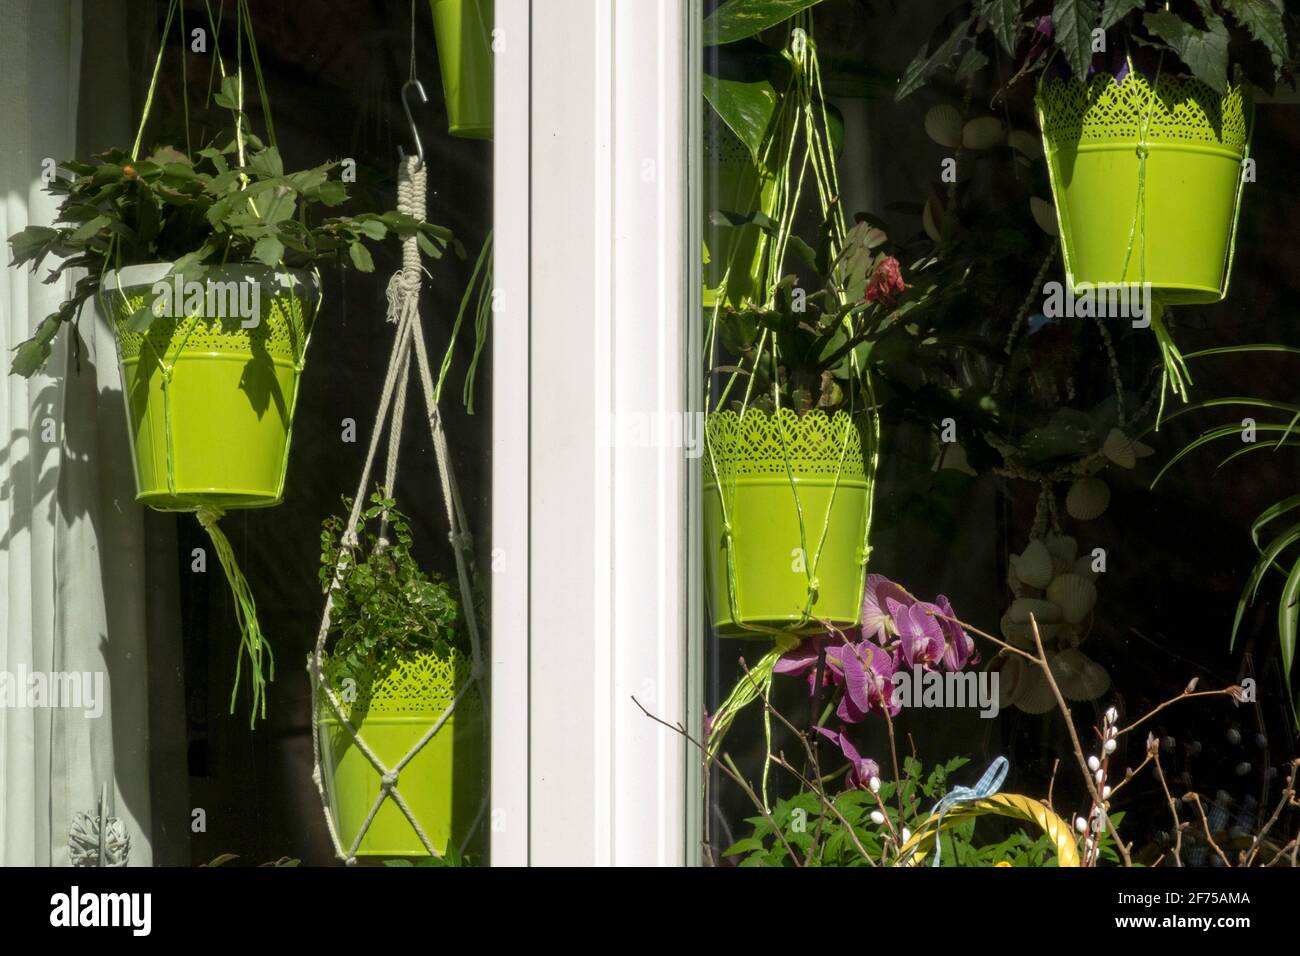 Plantes de maison dans des pots suspendus dans la fenêtre Banque D'Images